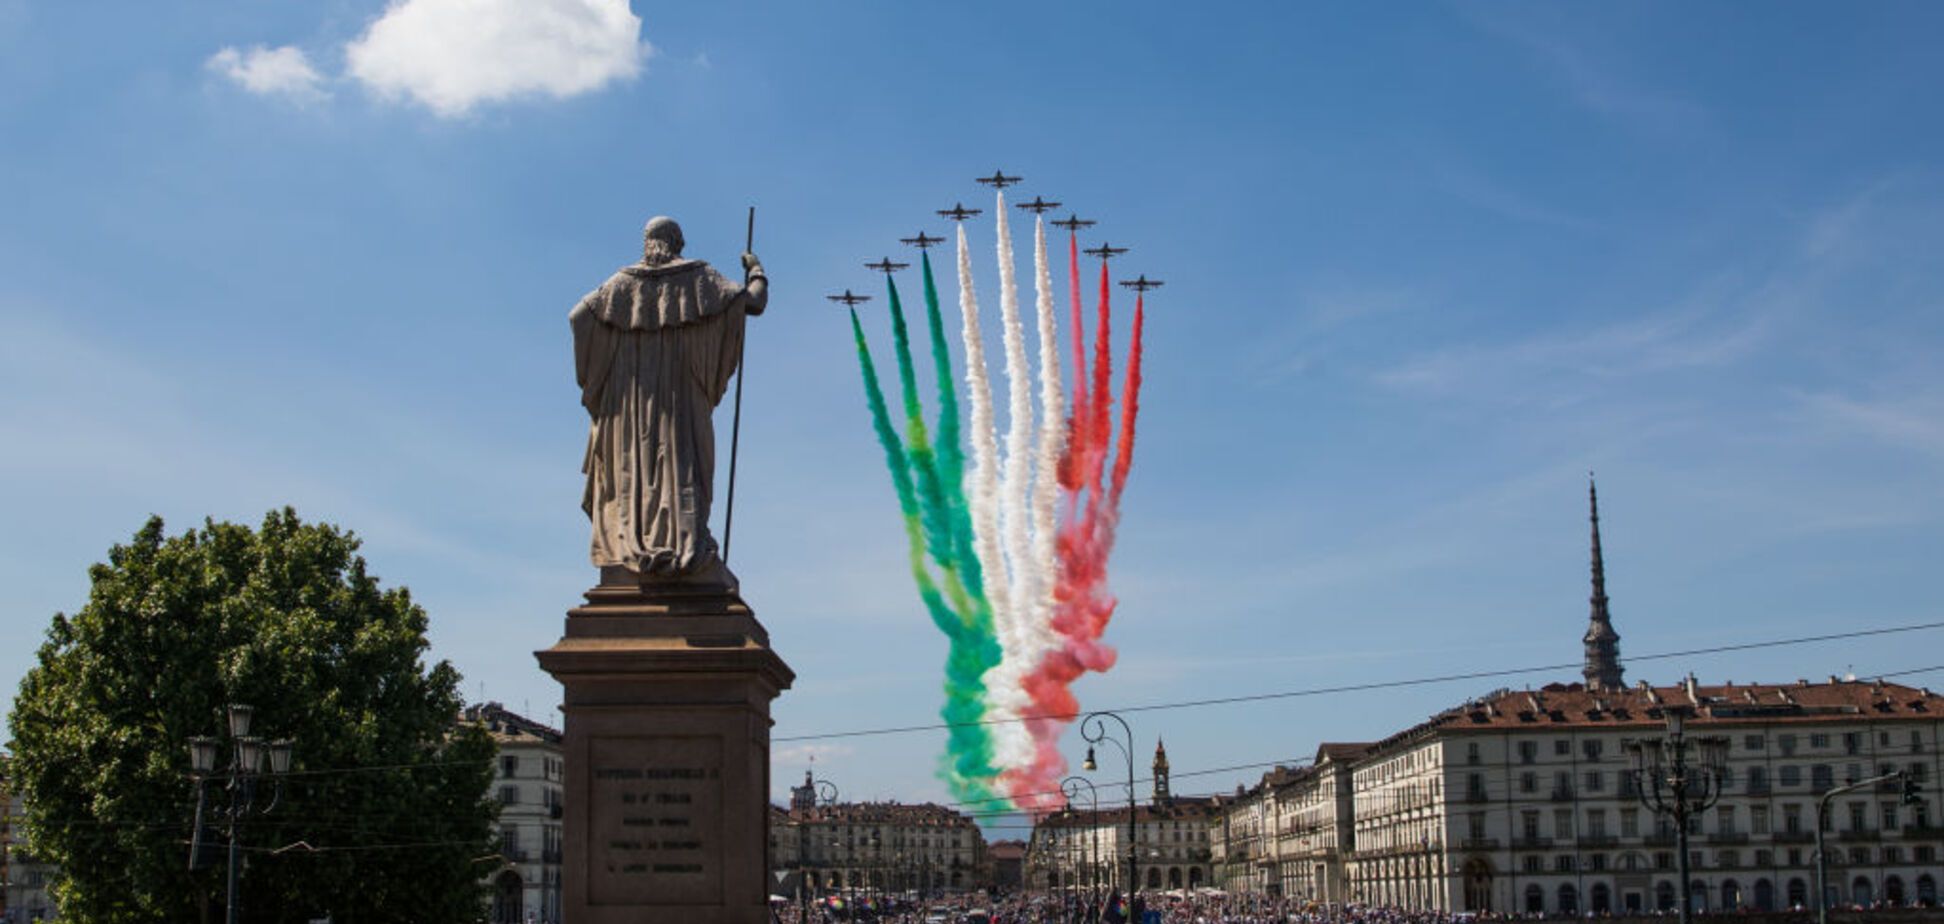 Символ будущей победы над пандемией: в Италии состоялся грандиозный авиапарад. Впечатляющие фото и видео